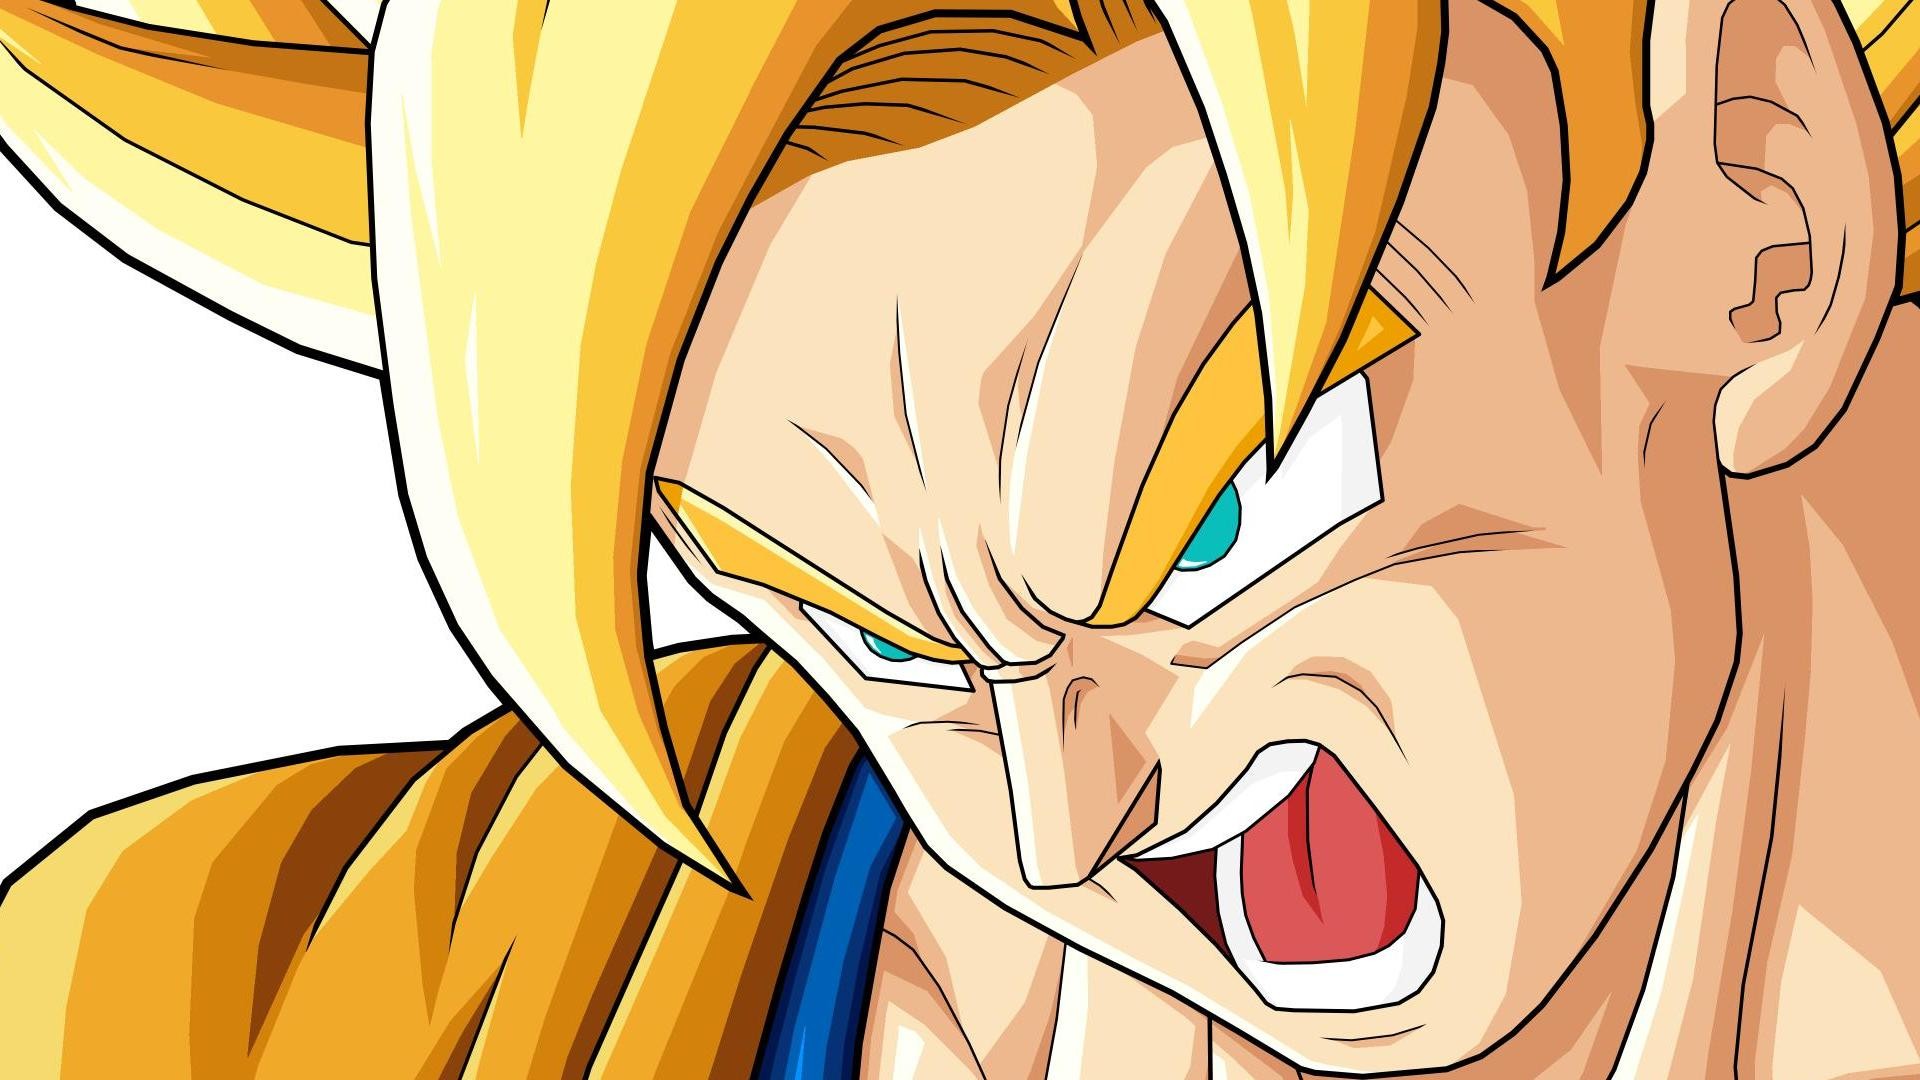 Goku Backgrounds Free Download | PixelsTalk.Net